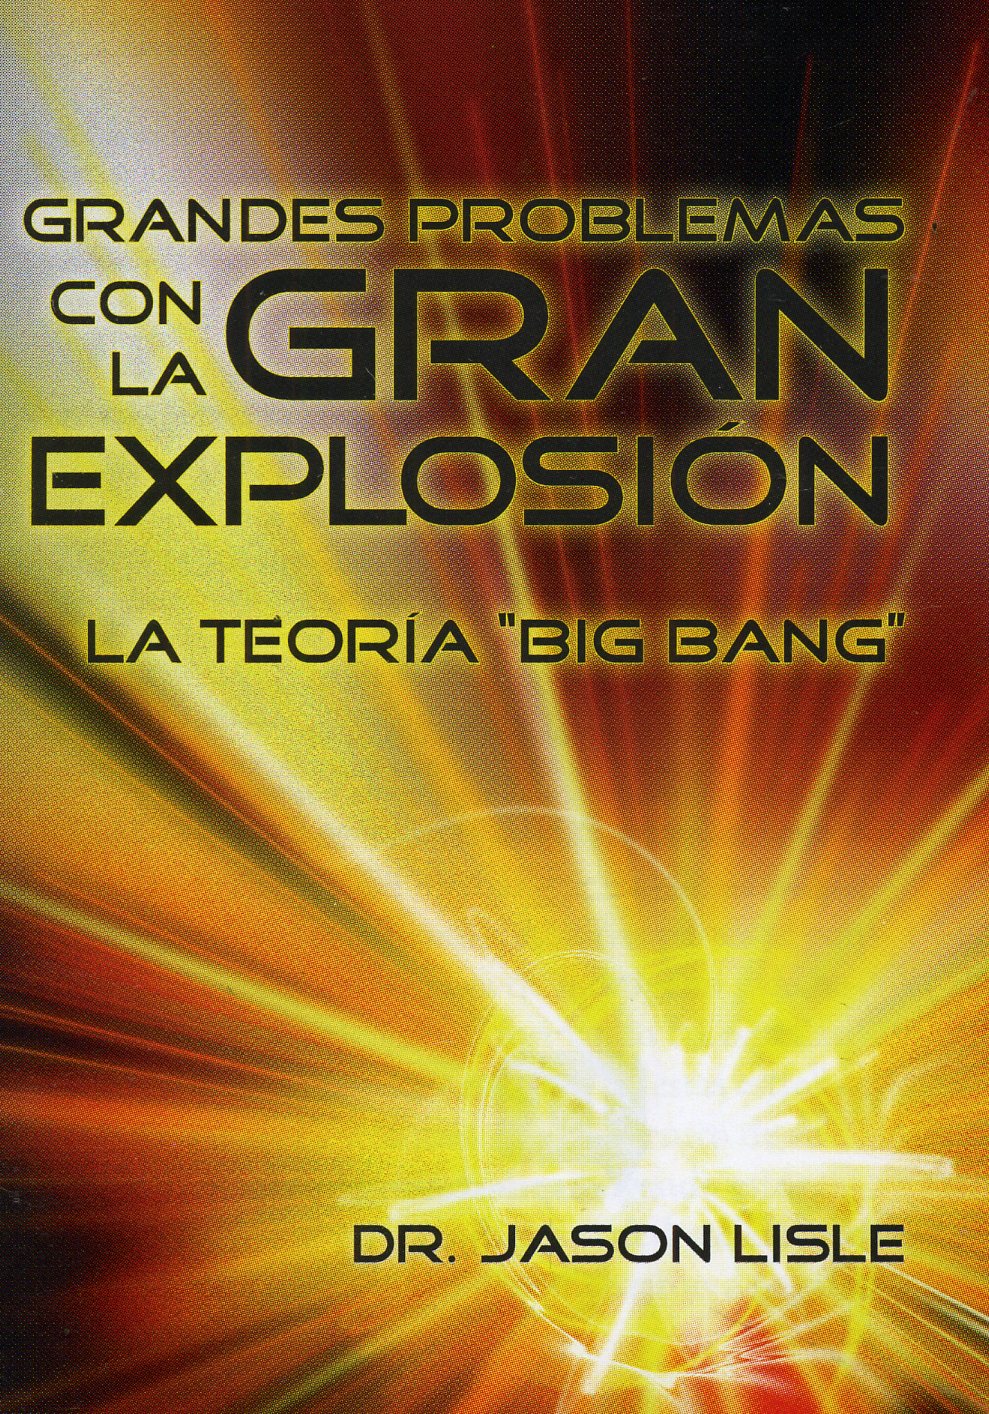 Grandes problemas con la gran explosión la teoría del "Big Bang"